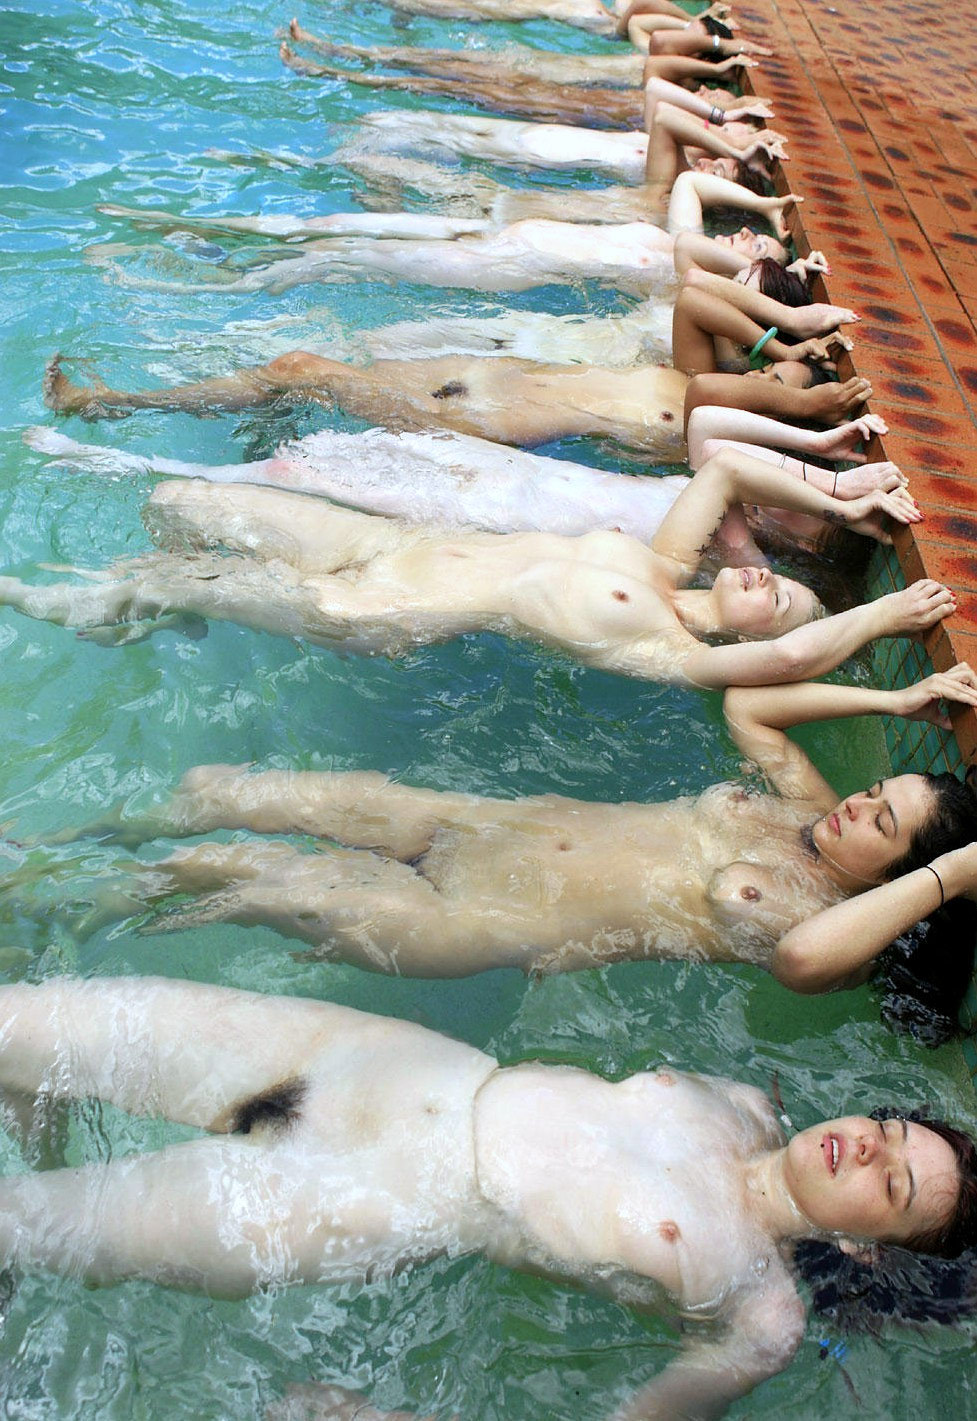 nu-bonheur:  La gym aquatique ! Rien de meilleur, nu dans la piscine. Il faudrait